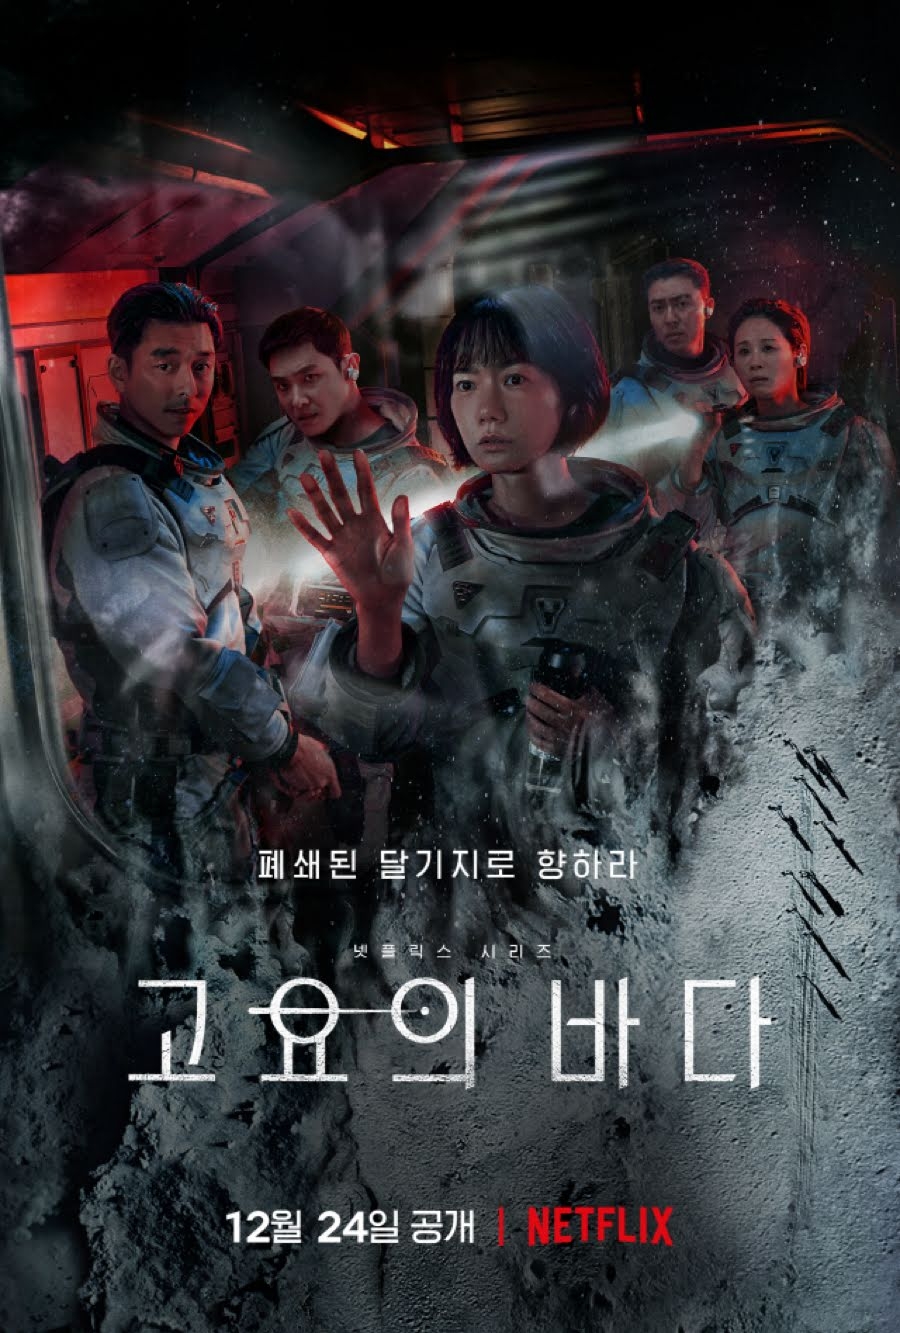 Phim mới của Gong Yoo được kỳ vọng tiếp nối thành công của ‘Squid Game’ và ‘Hellbound’